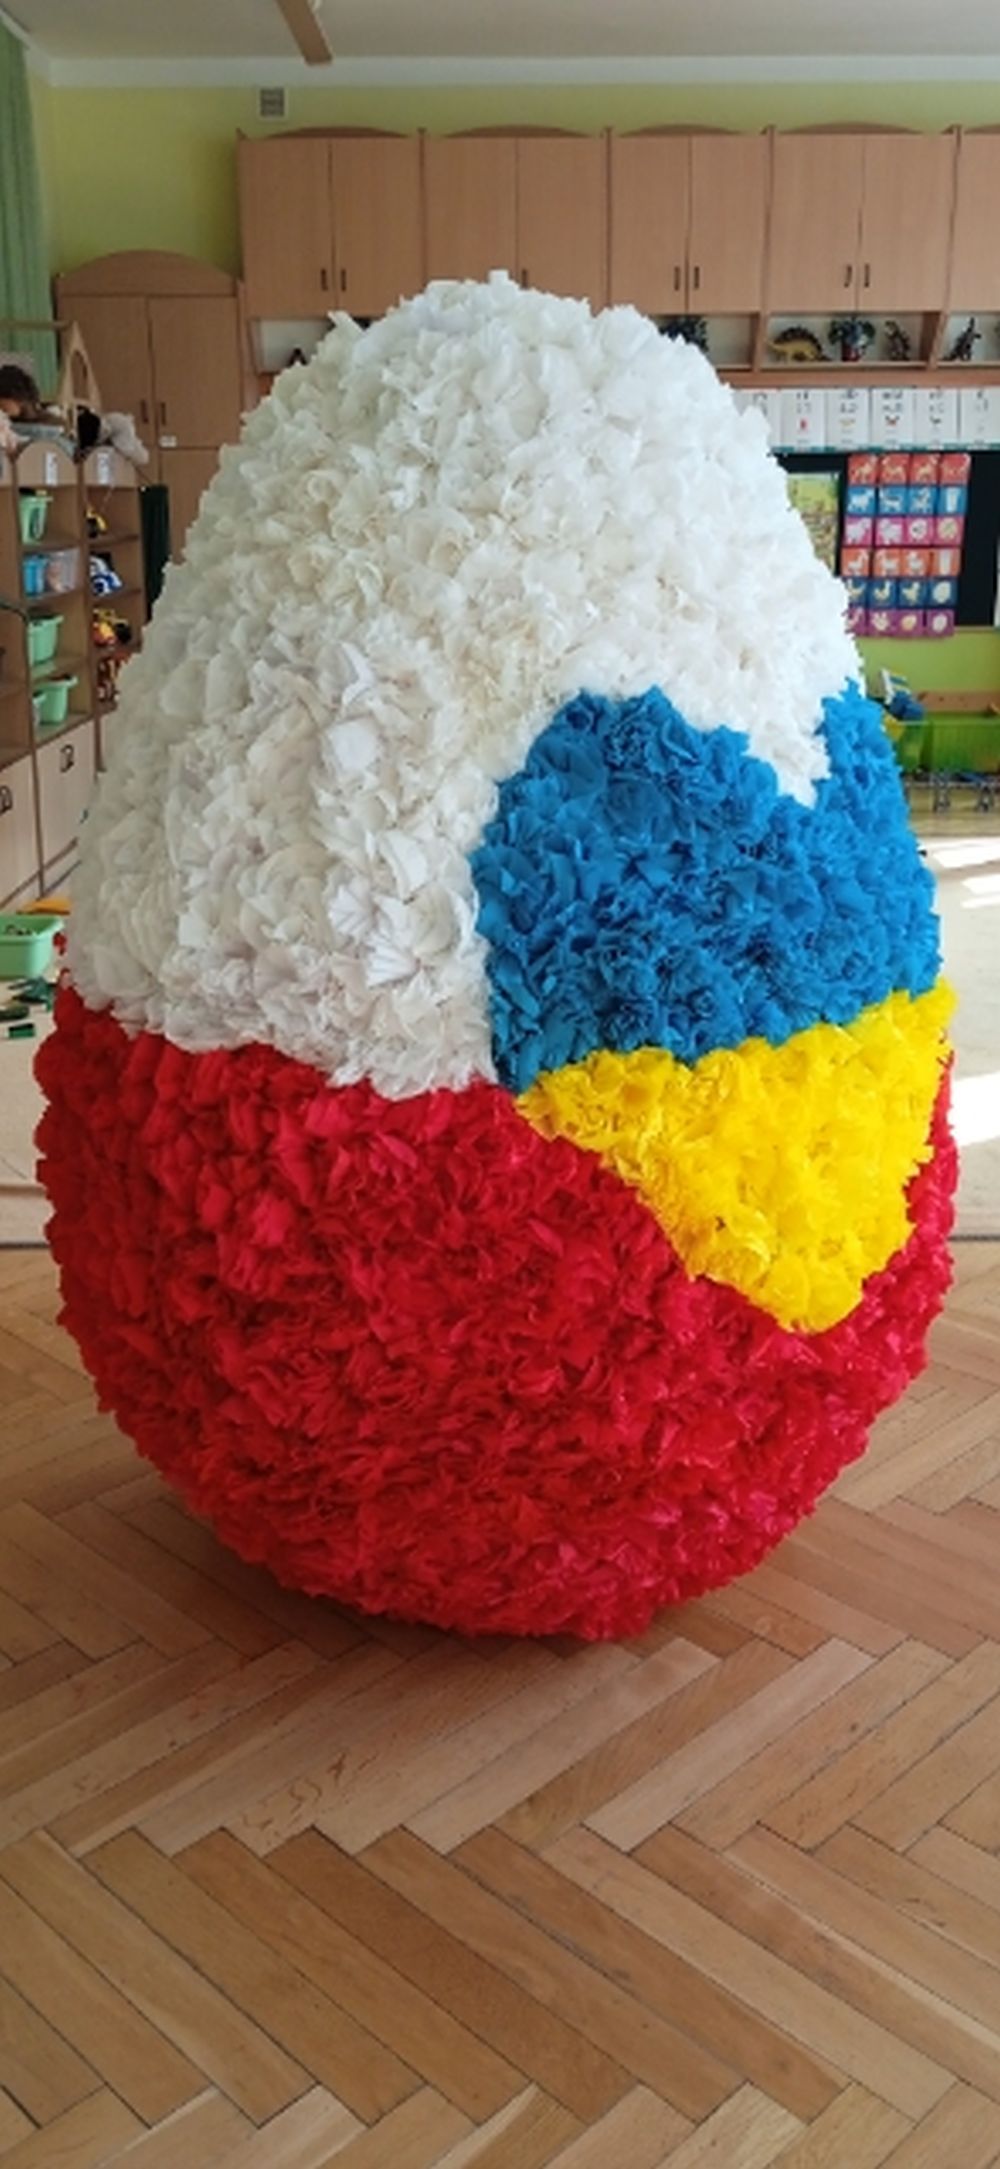 Na zdjęciu jest wielkie jajko styropianowe ozdobione różyczkami z krepiny. Jajko jest w barwach biało czerwonych, a na środku jest żółto niebieskie serce.